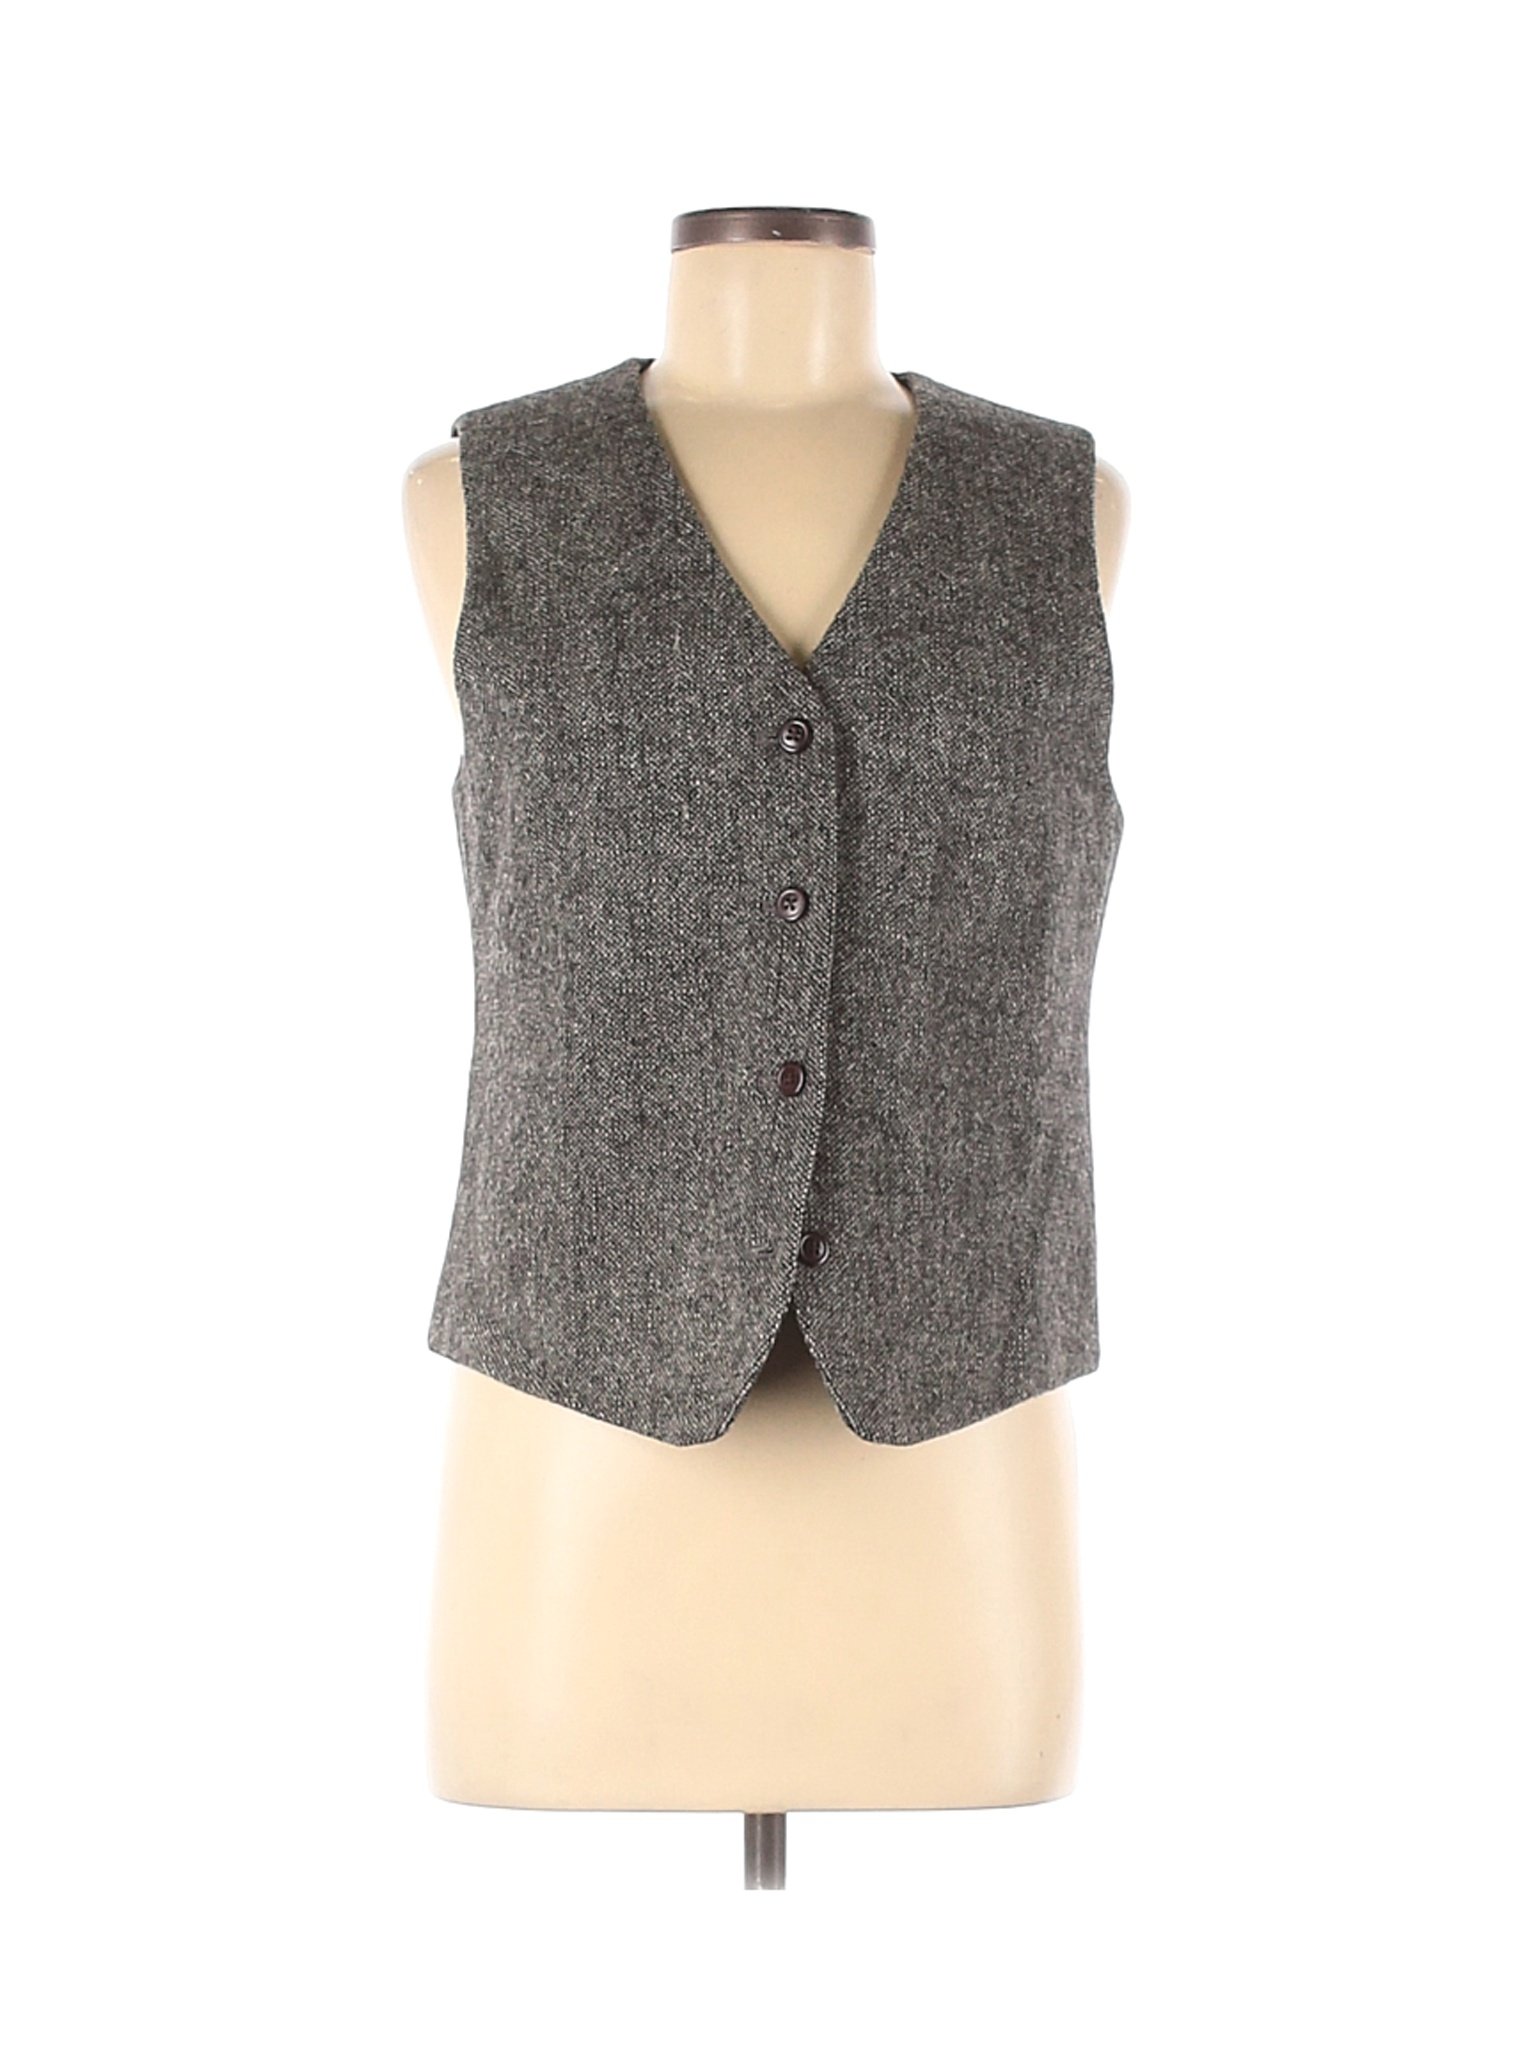 Orvis Women Gray Vest 6 | eBay